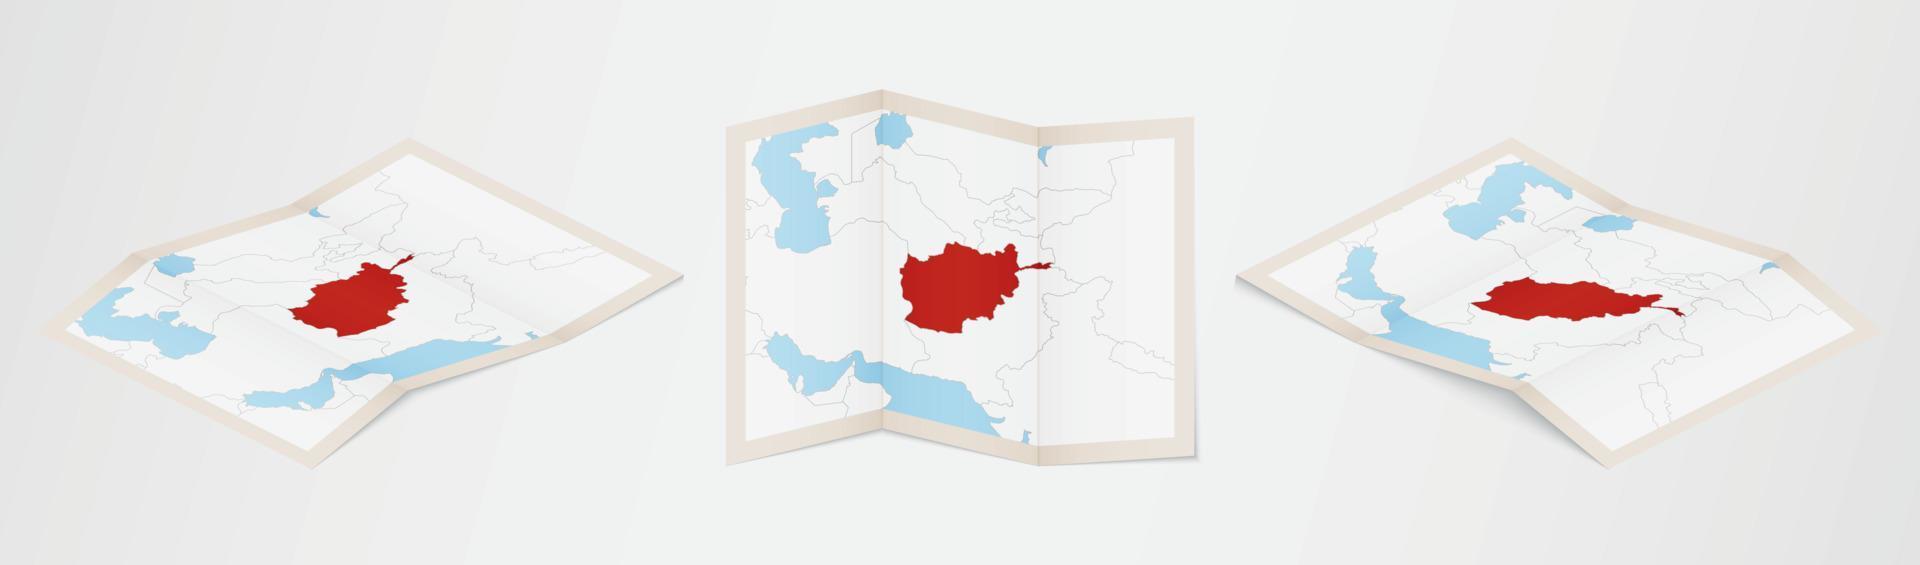 carte pliée de l'afghanistan en trois versions différentes. vecteur